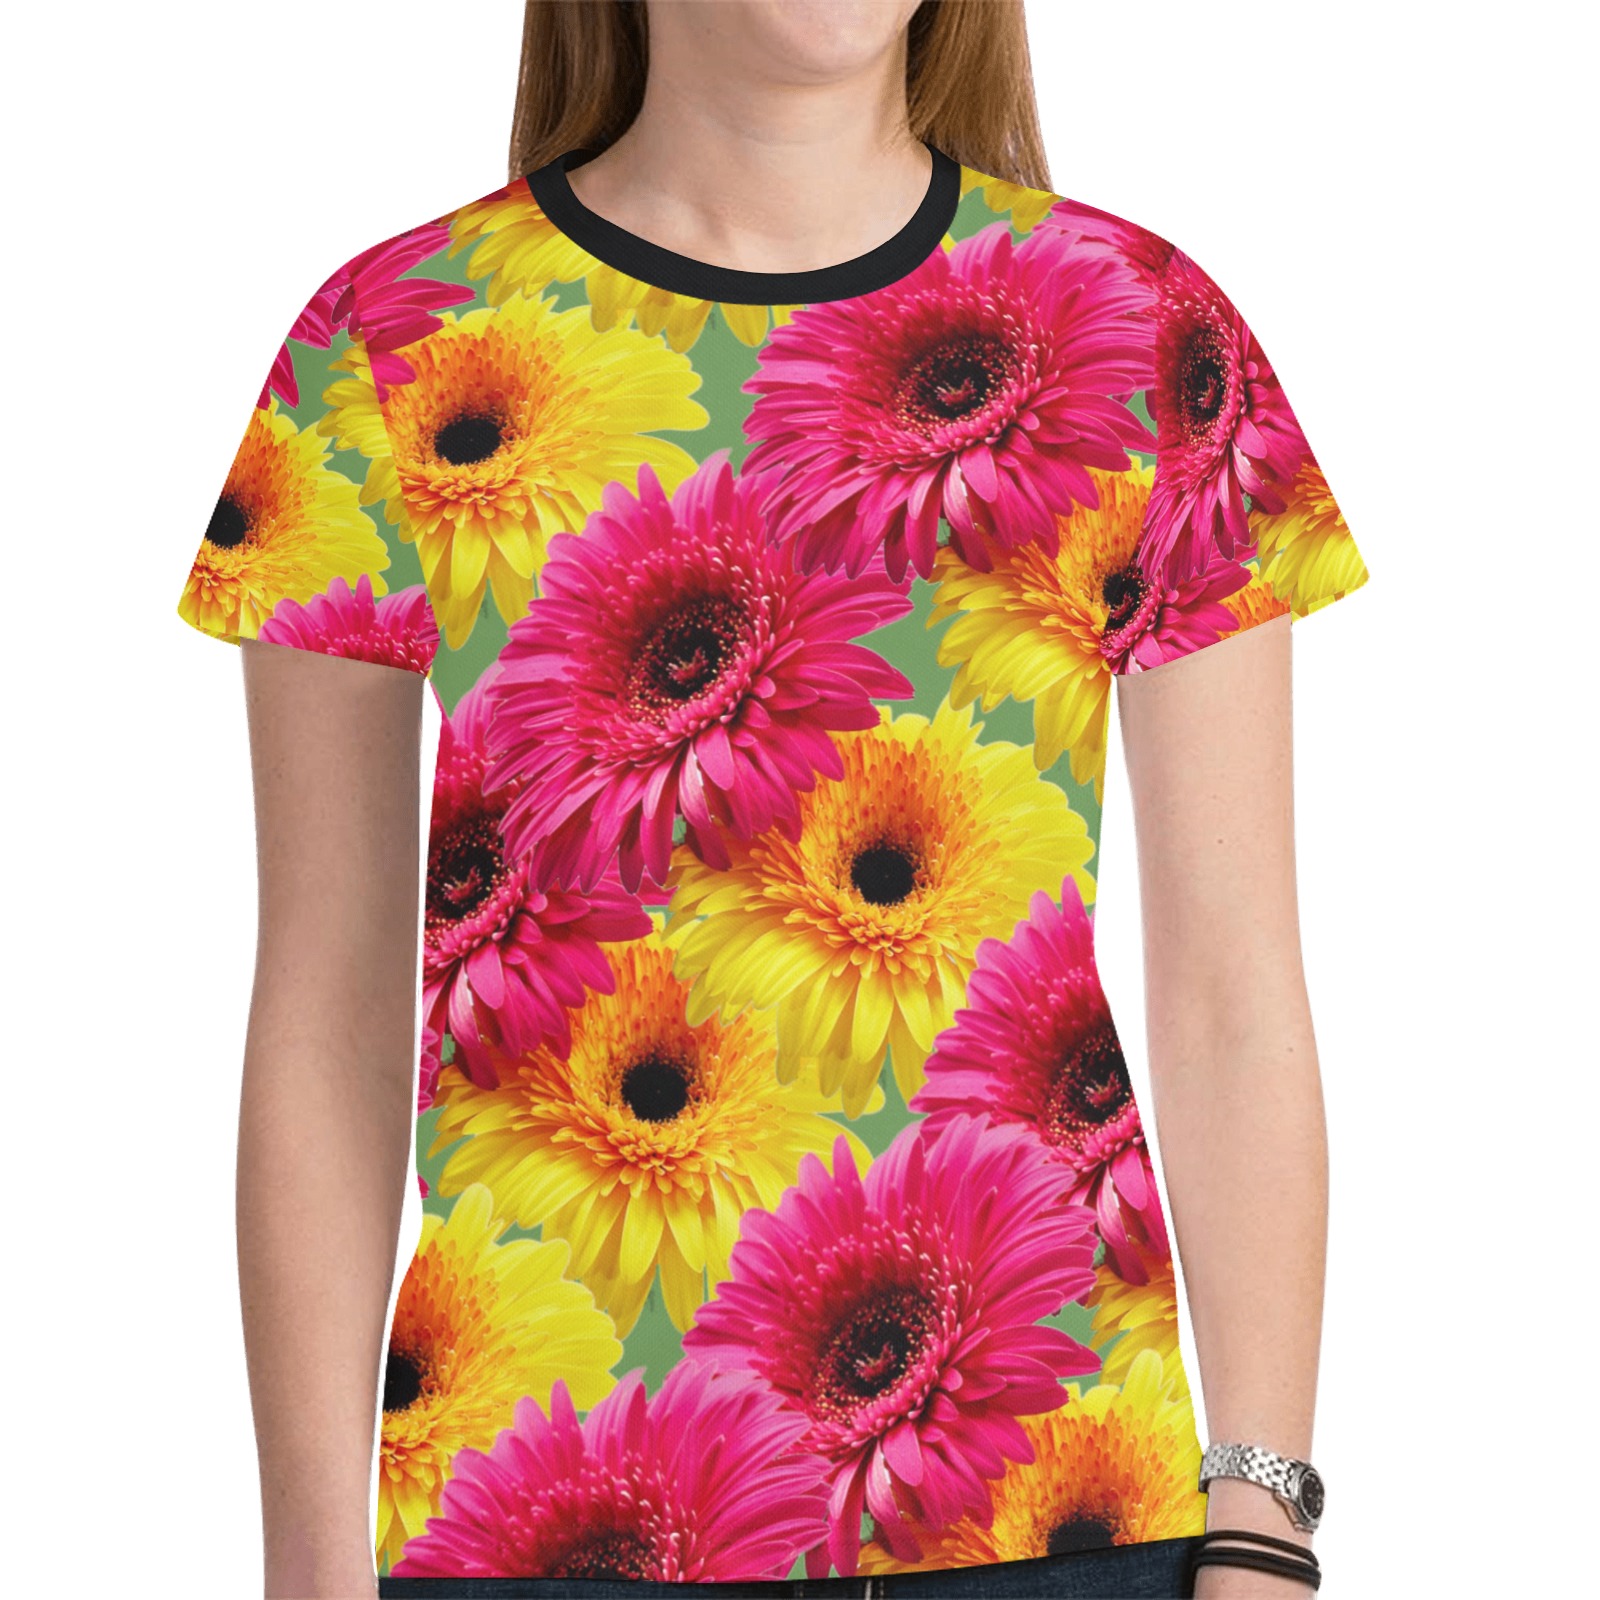 flower power grn New All Over Print T-shirt for Women (Model T45)